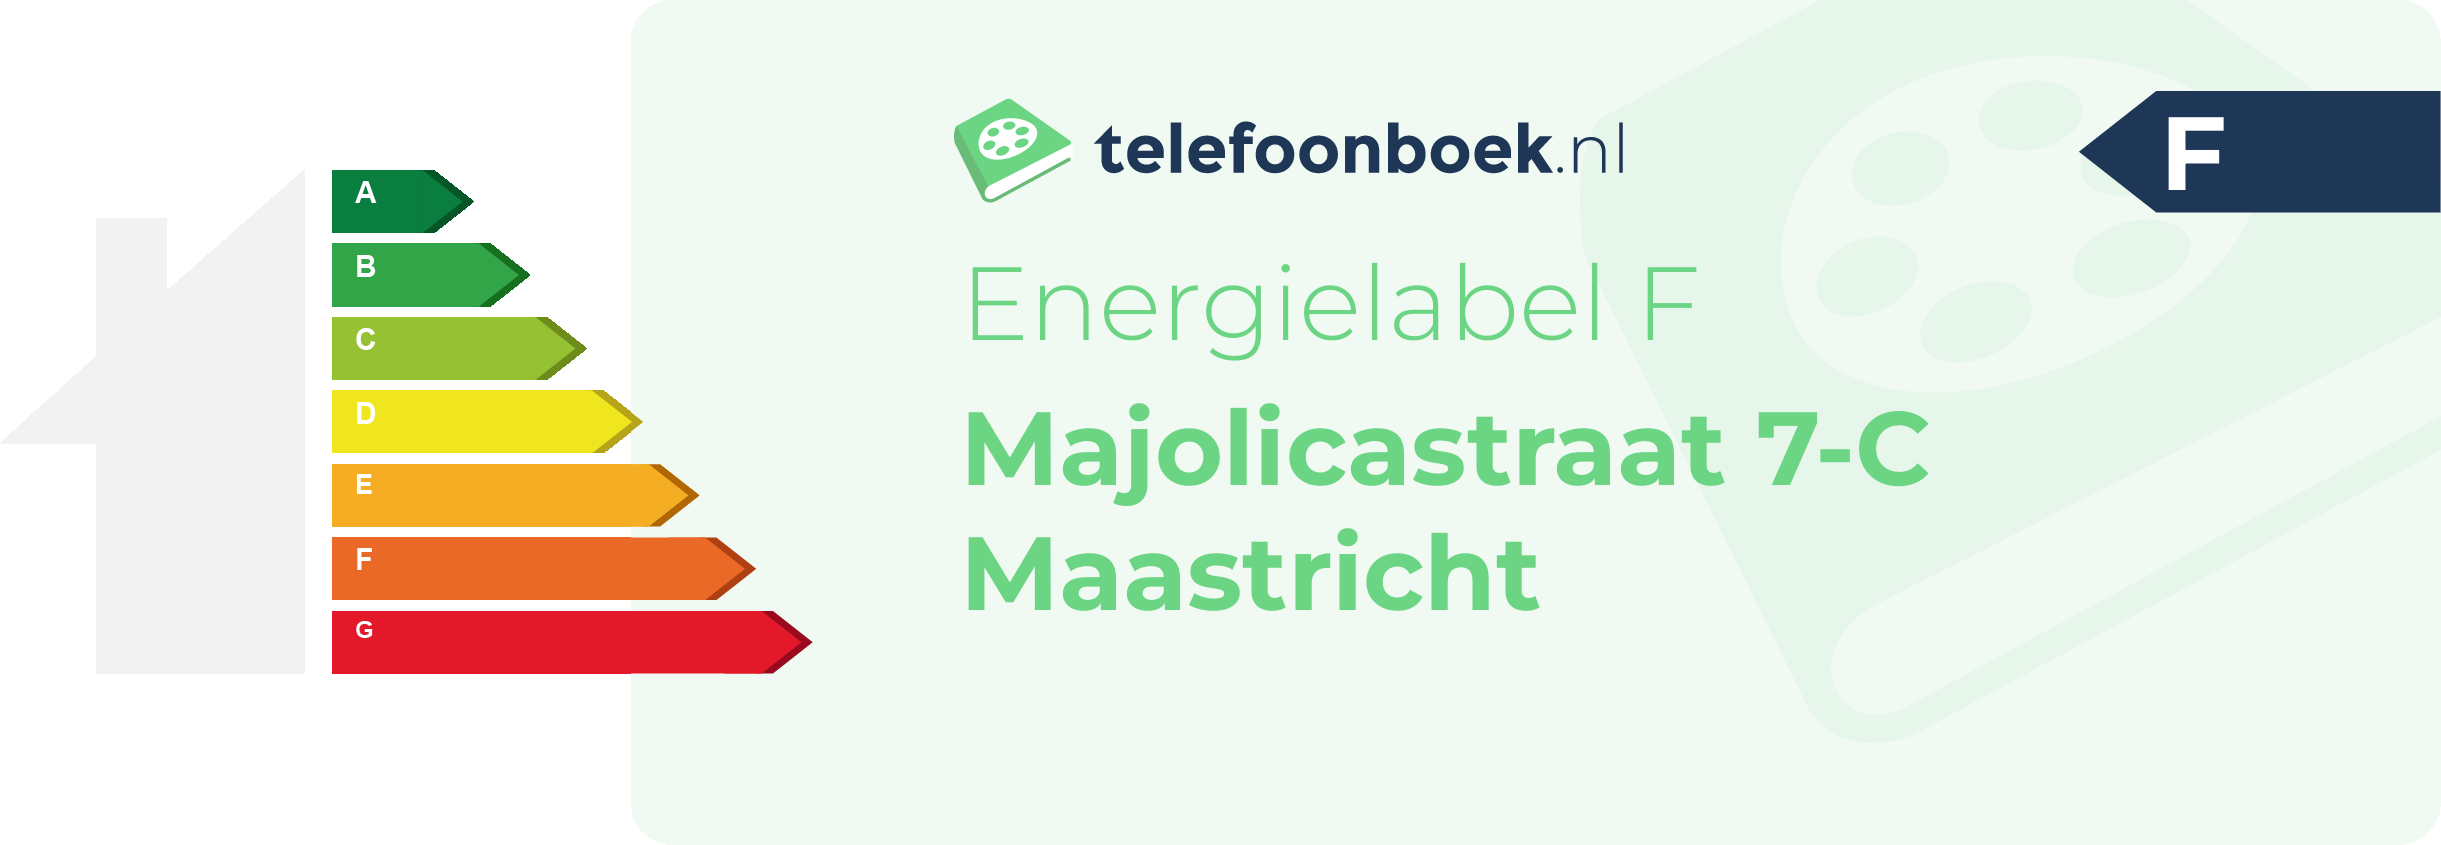 Energielabel Majolicastraat 7-C Maastricht